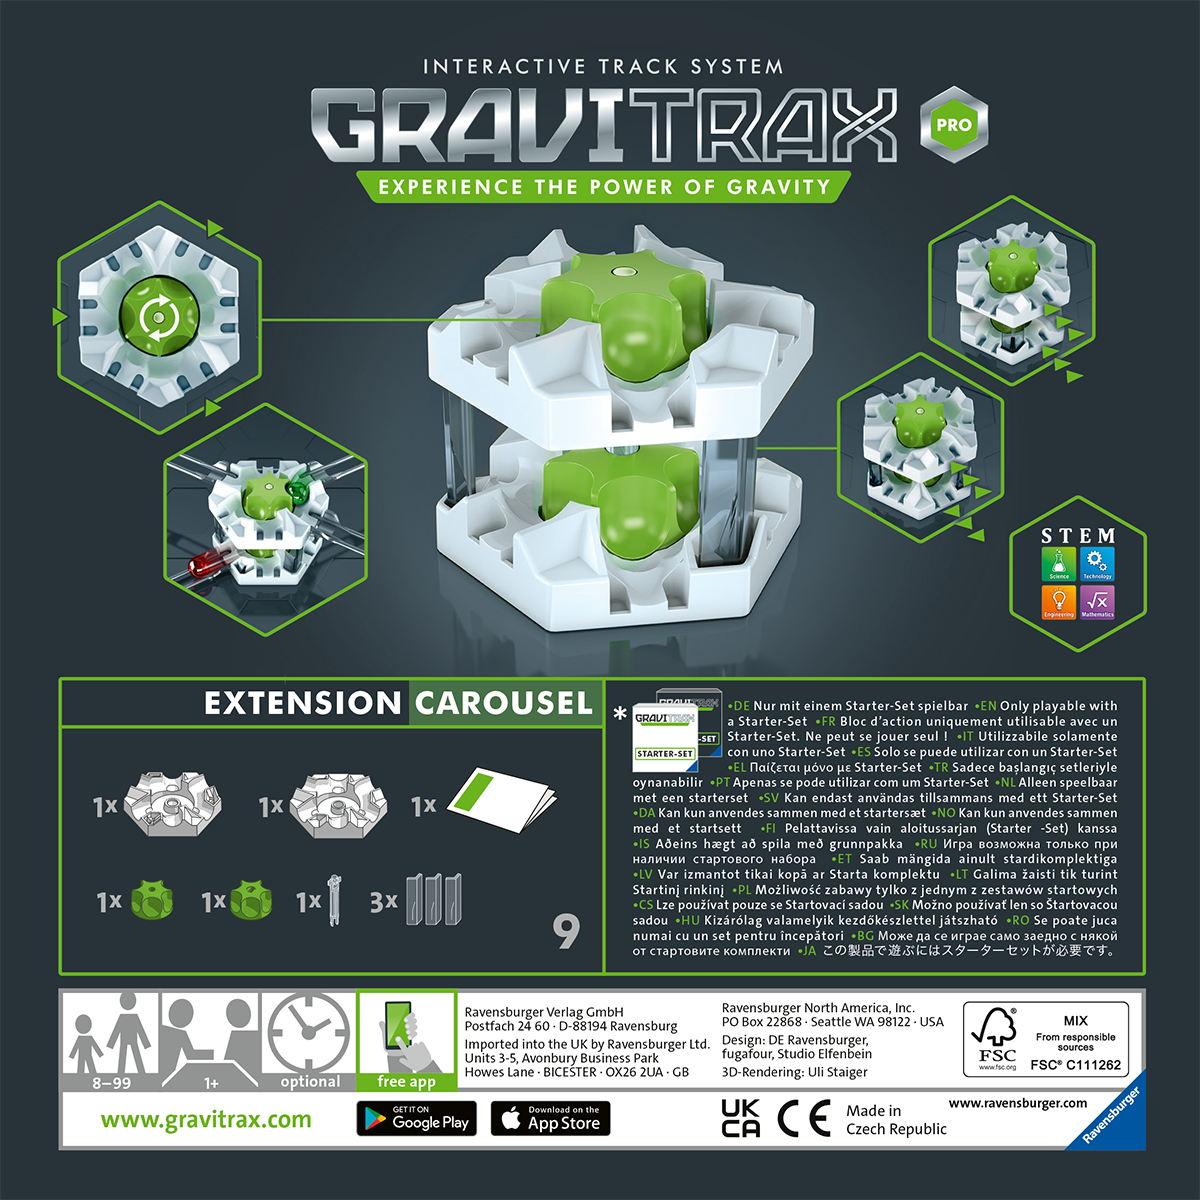 Ravensburger gravitrax pro carousel, gioco innovativo ed educativo stem, 8+, accessorio - GRAVITRAX